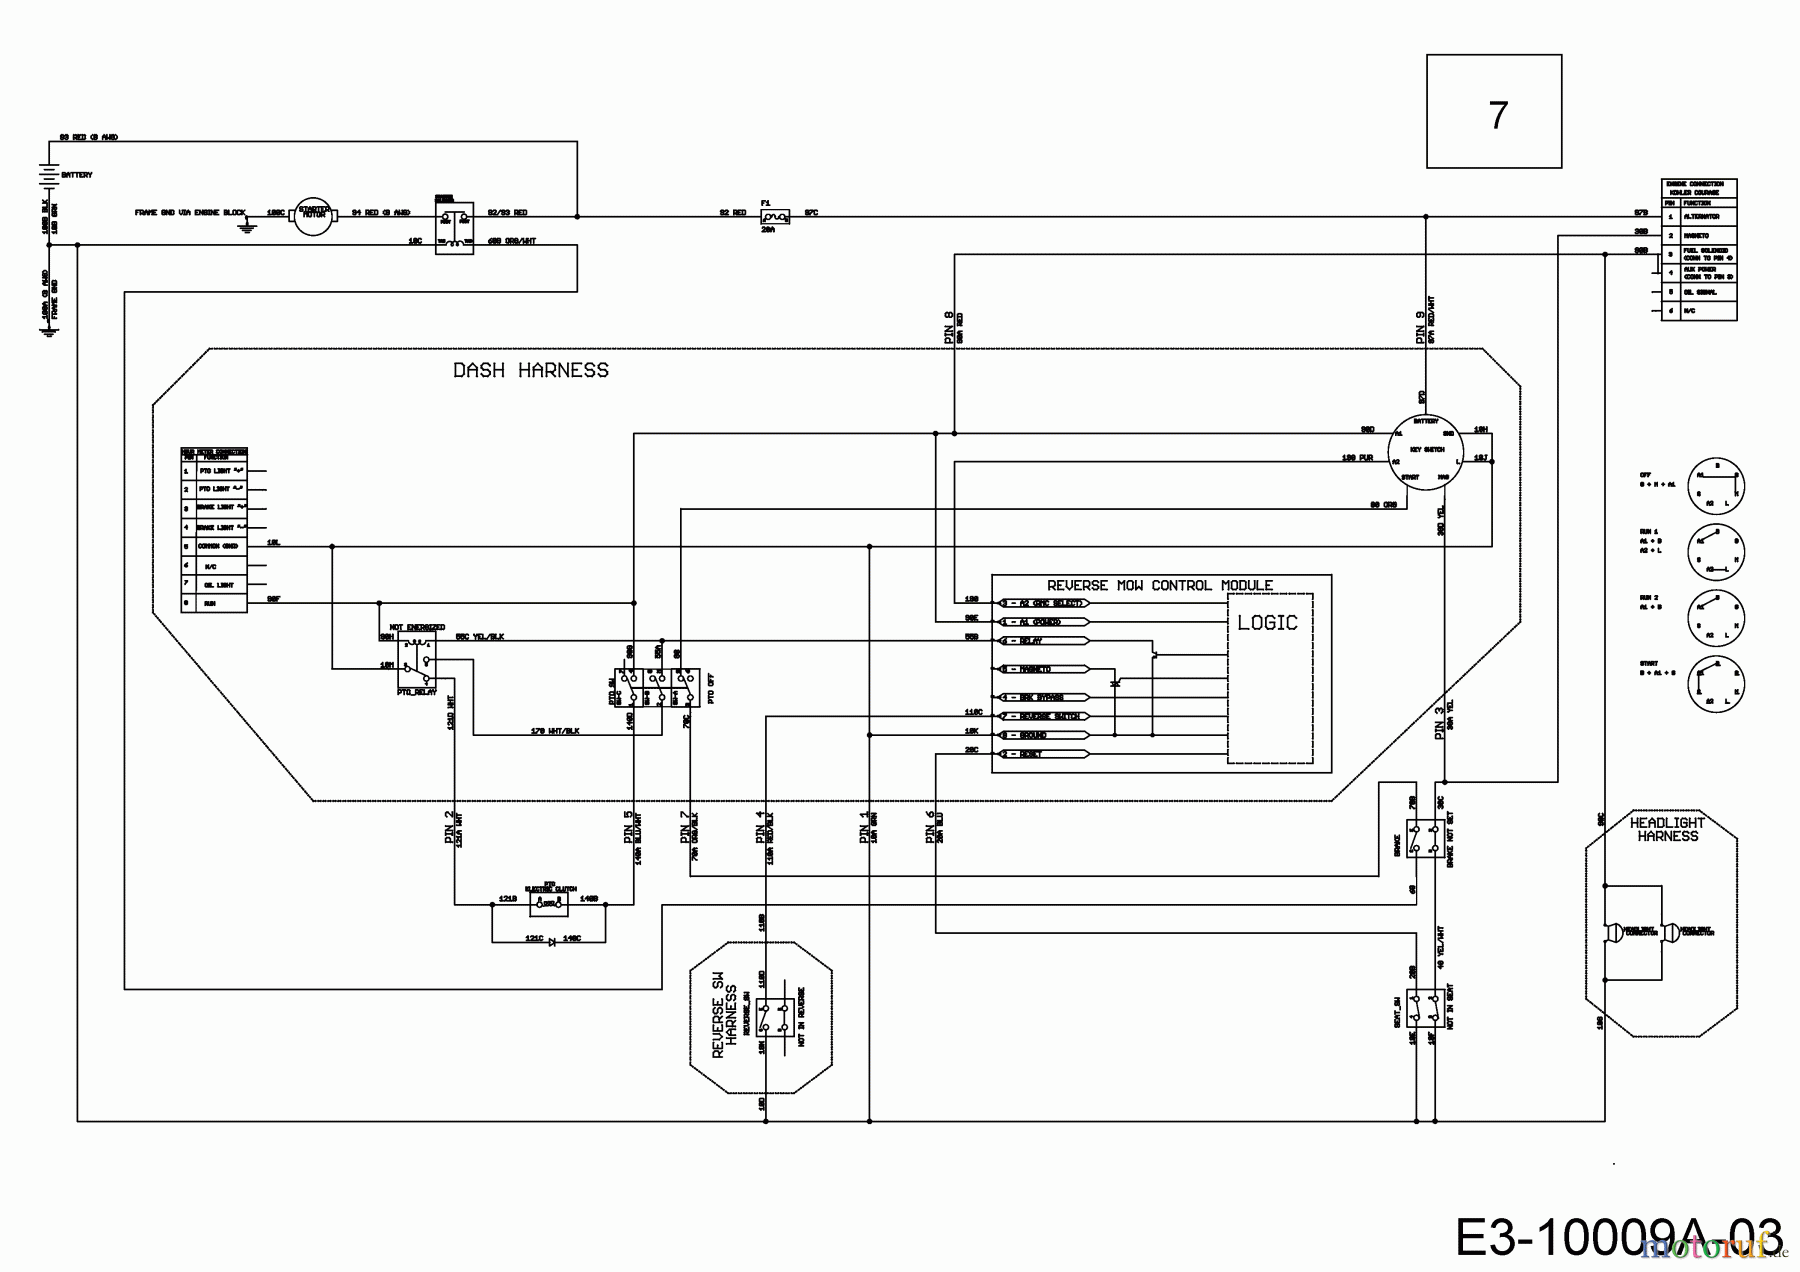  Cub Cadet Lawn tractors XT1 OS107 13A8A1CS603  (2017) Wiring diagram dashboard